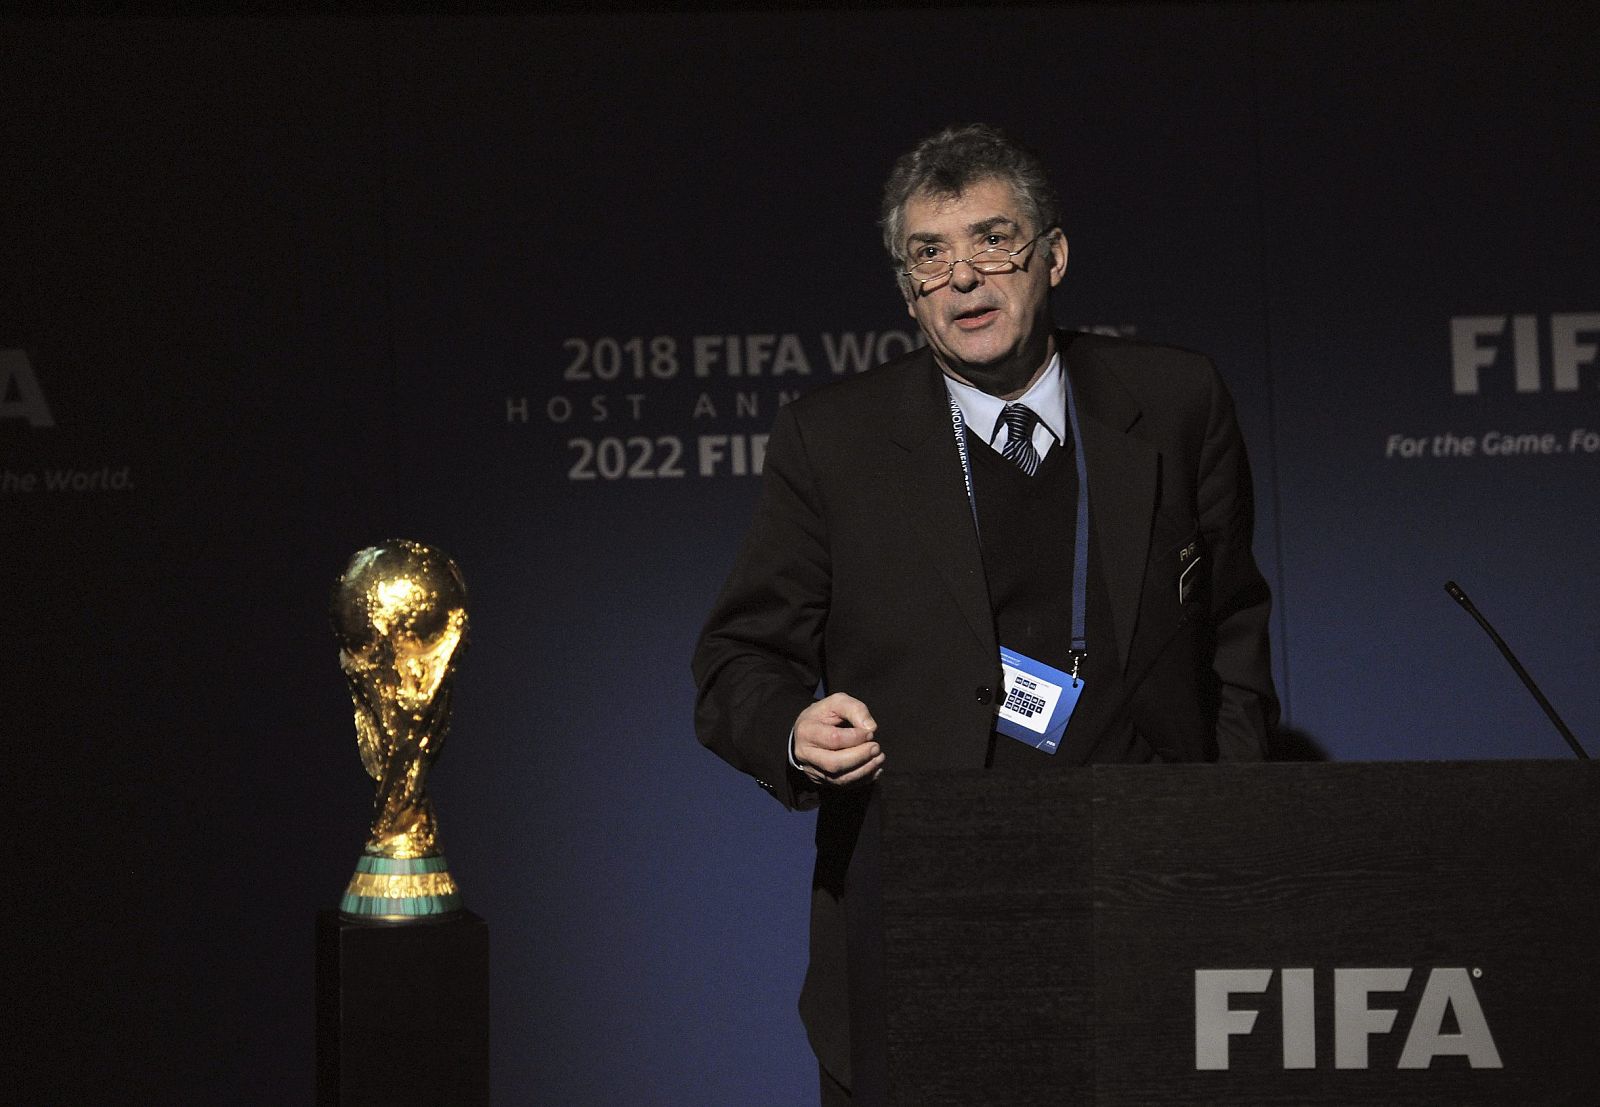 El presidente de la RFEF, Ángel María Villar, mientras defendía la candidatura ibérica ante la FIFA en Zúrich el jueves 2 de diciembre.